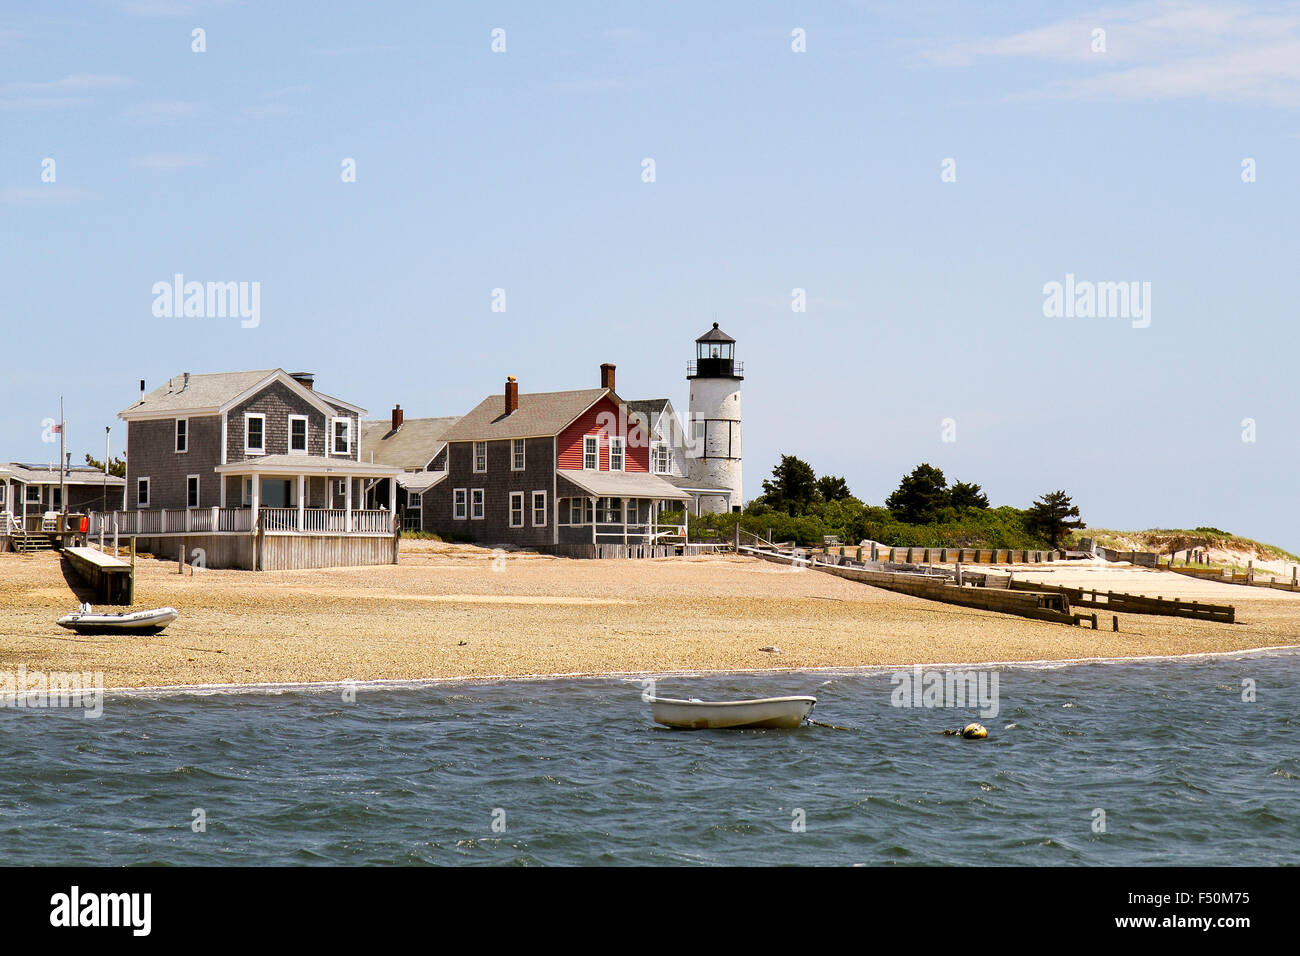 Les chalets isolés et sandy neck lighthouse vu de l'eau, Cape Cod, Massachusetts Banque D'Images